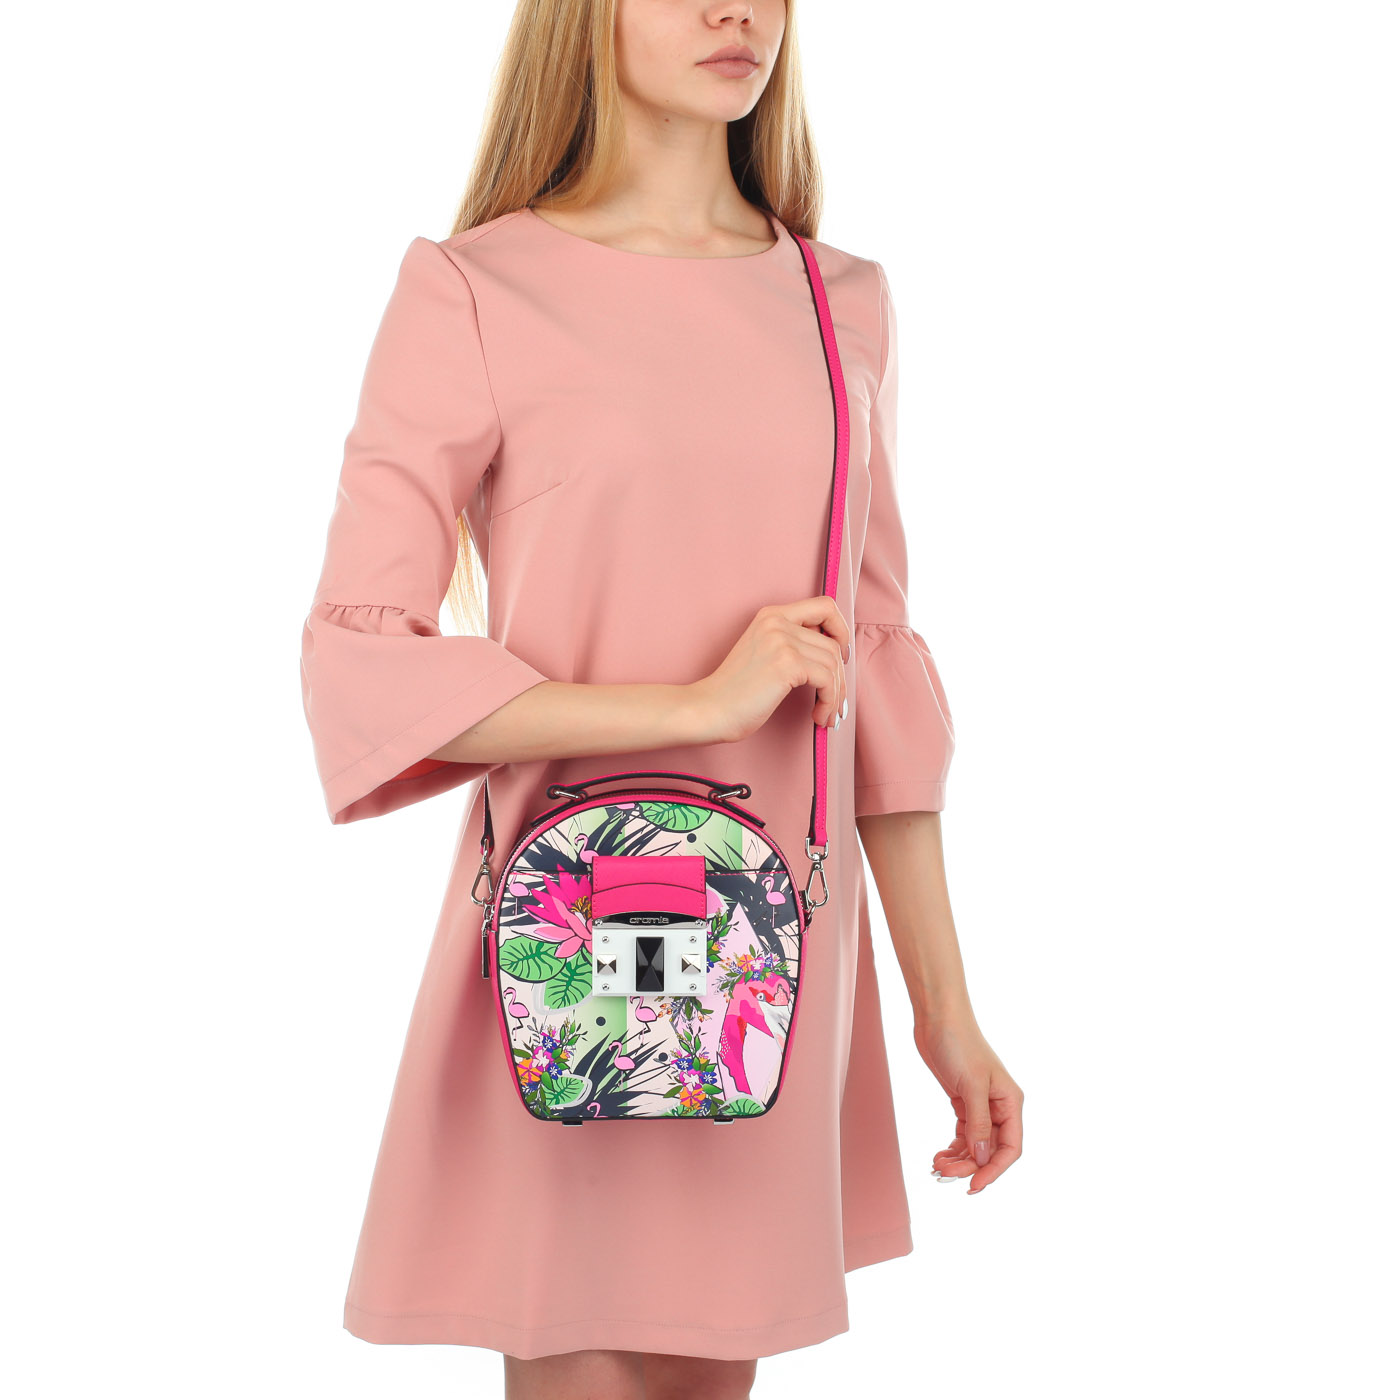 Женская сумочка с ярким принтом Cromia It flamingo